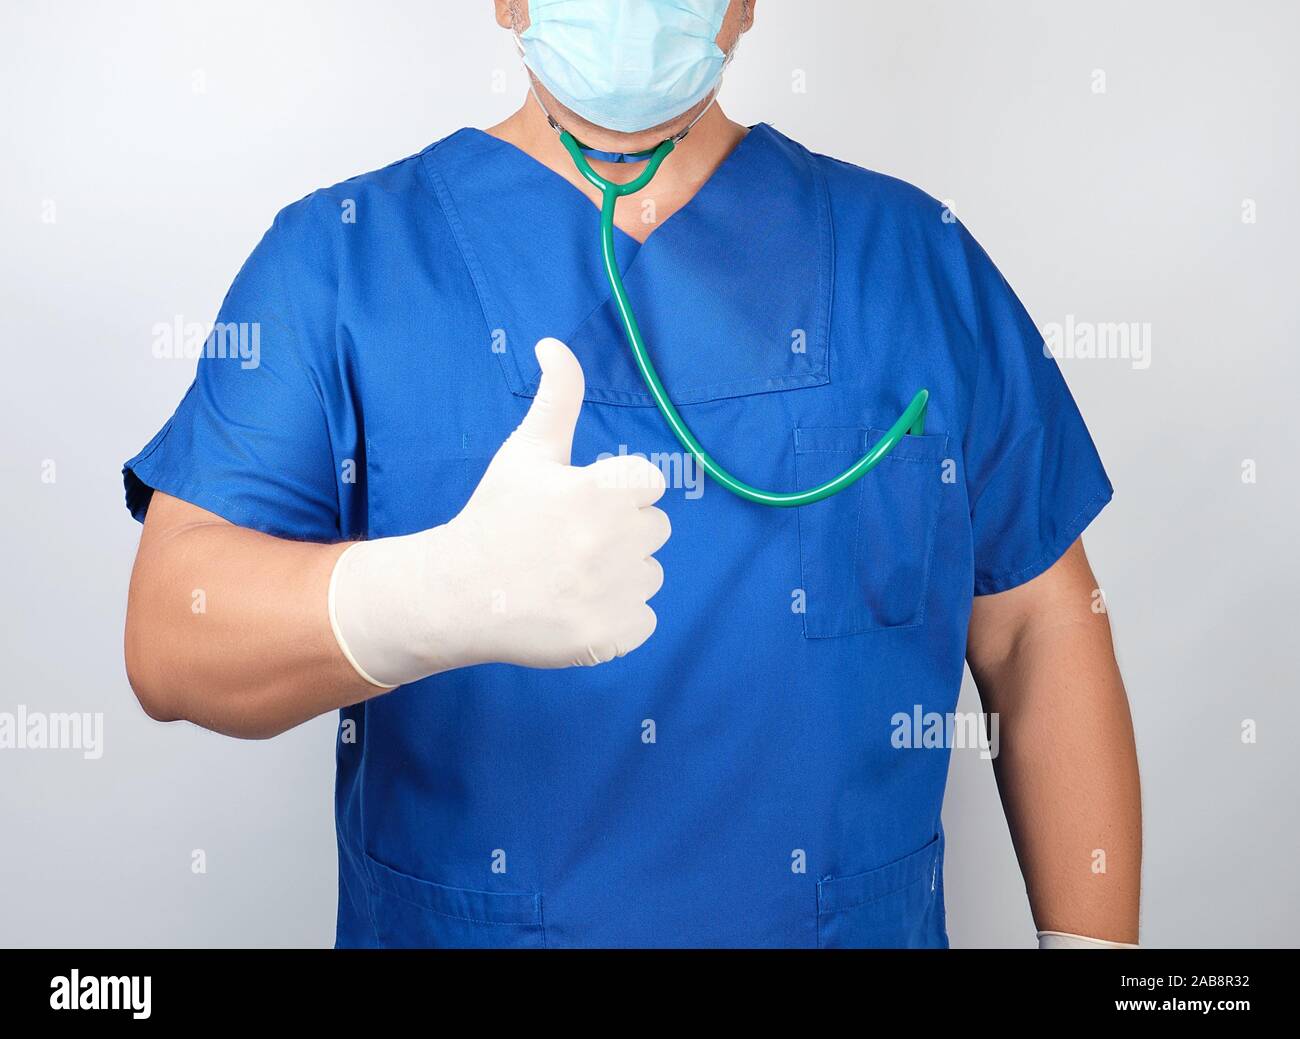 medico-varon-en-uniforme-azul-y-guantes-blancos-de-latex-muestra-como-gesto-de-la-mano-derecha-con-el-pulgar-levantado-abr